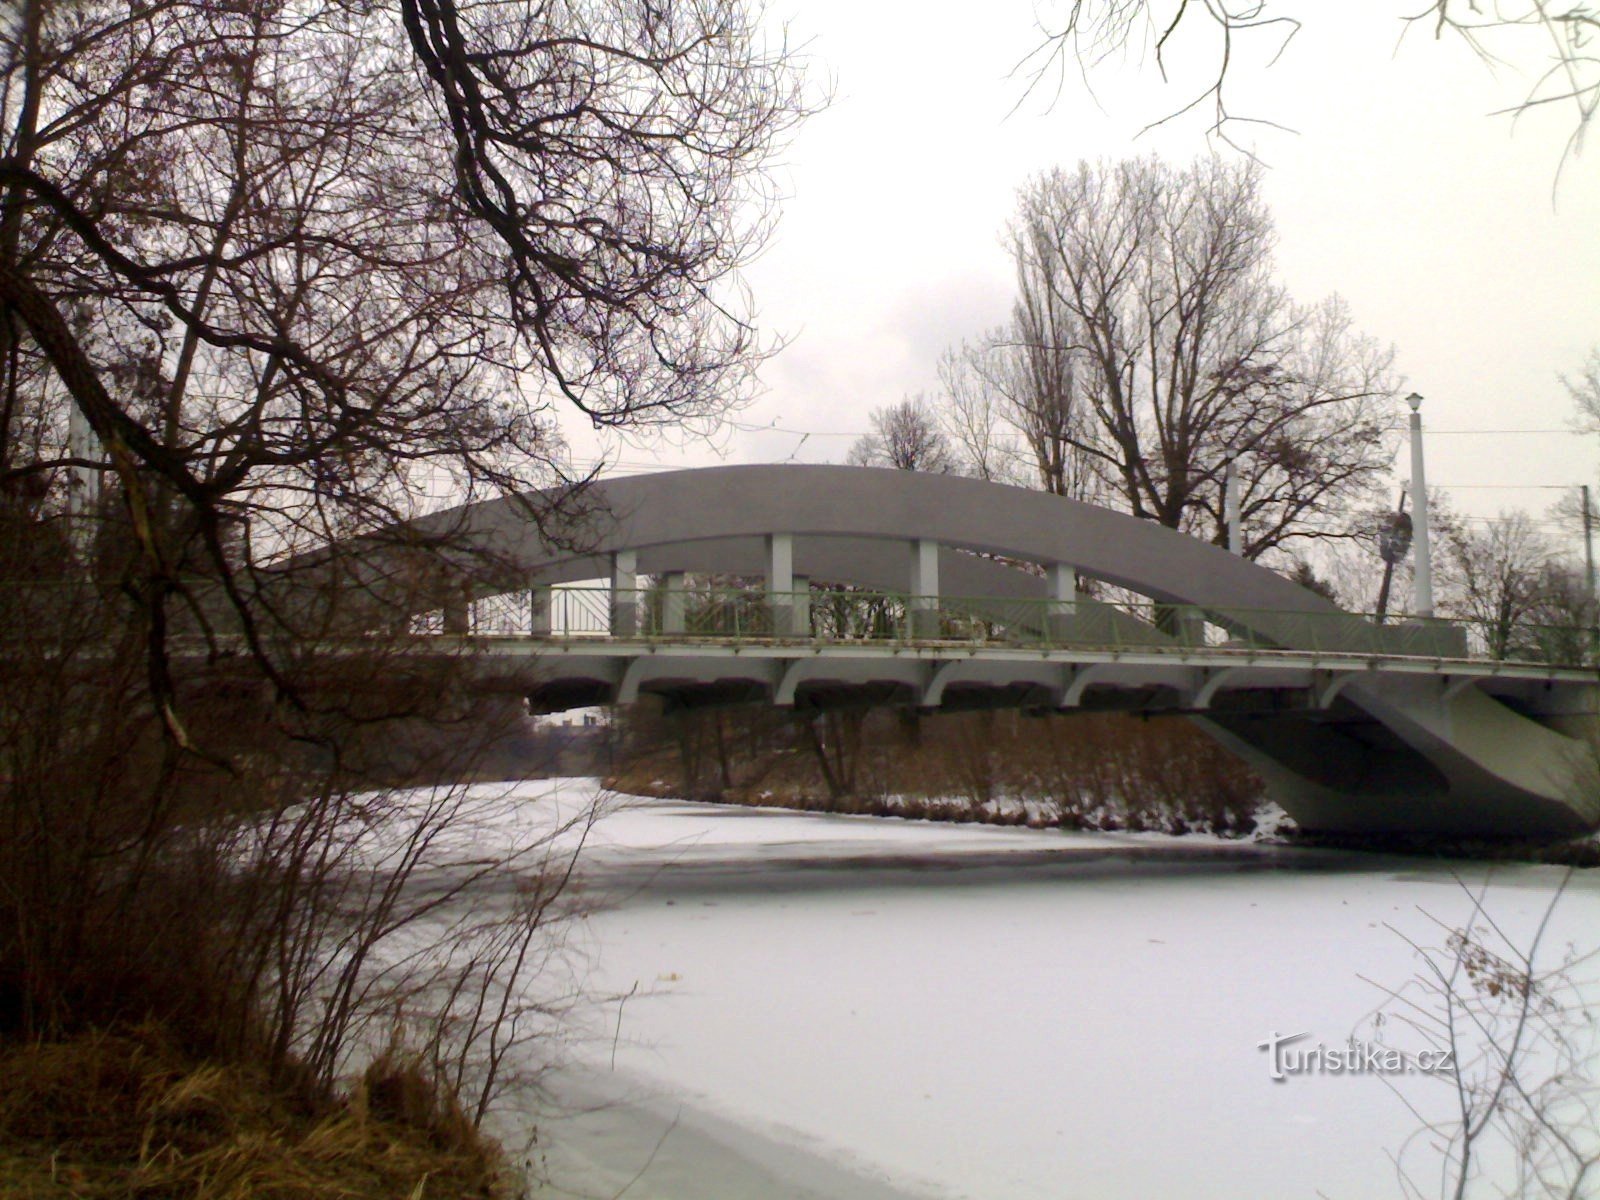 Malšovice híd Orlica felett